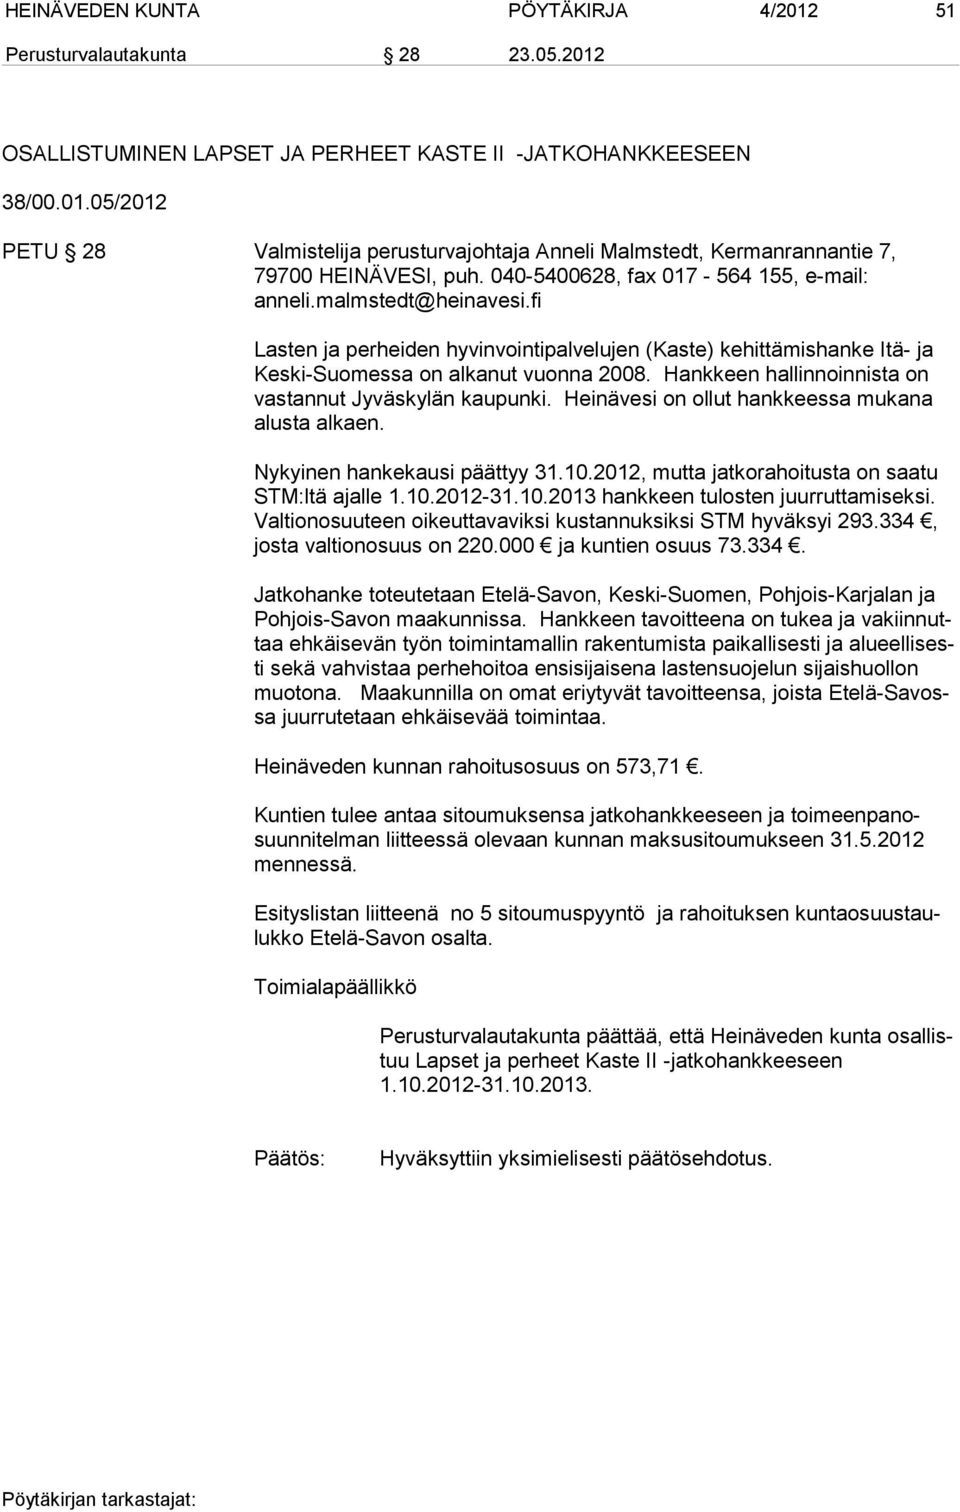 Hankkeen hallinnoinnista on vastannut Jyväskylän kaupunki. Heinävesi on ollut hankkeessa mukana alusta alkaen. Nykyinen hankekausi päättyy 31.10.2012, mutta jatkorahoi tusta on saatu STM:ltä ajalle 1.